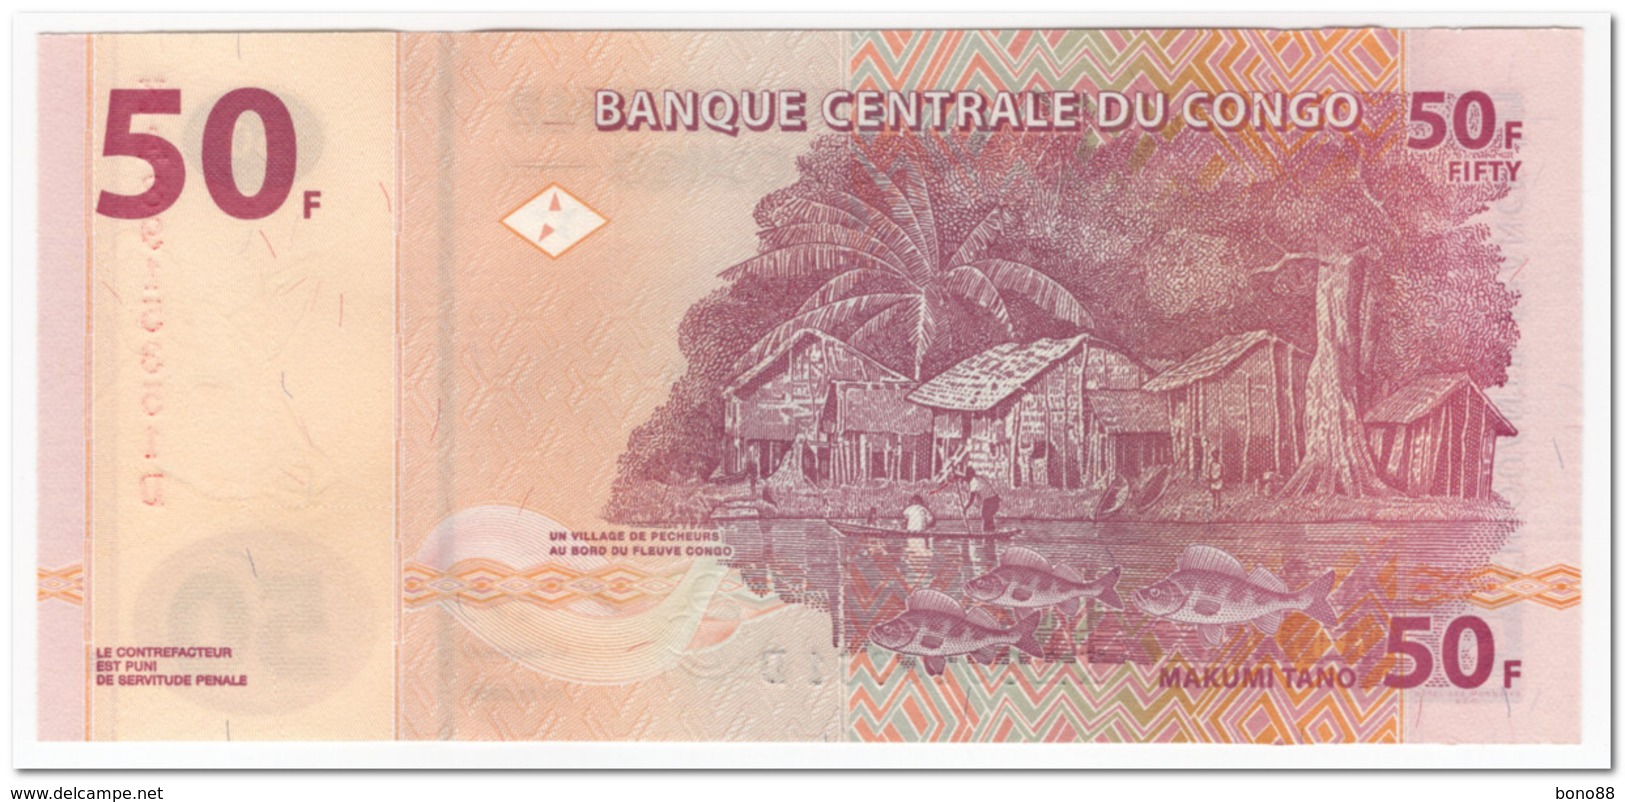 CONGO,50 FRANCS,2000,P.91,UNC - République Démocratique Du Congo & Zaïre